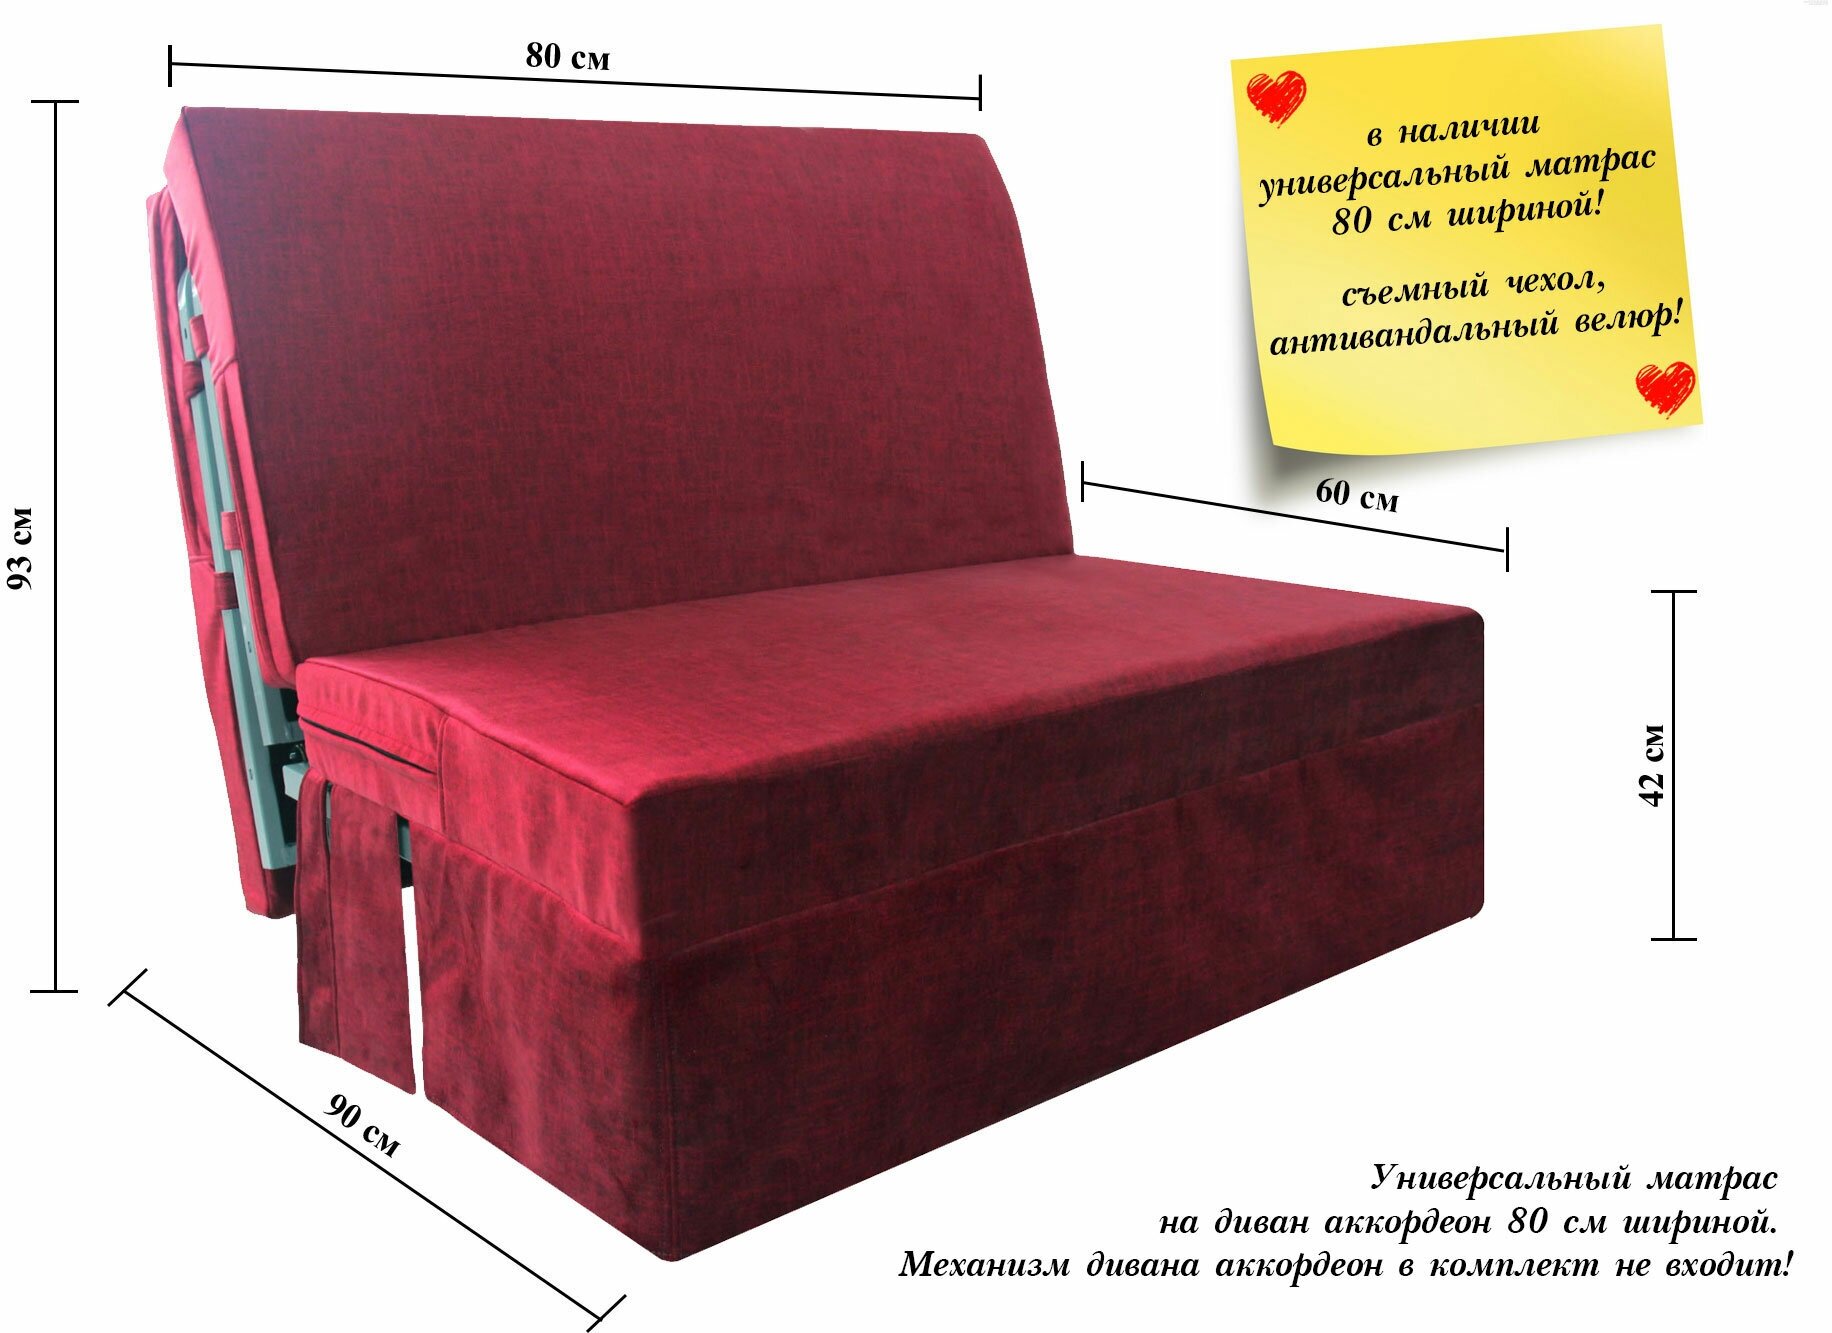 Характеристики модели Универсальный складной матрас для дивана аккордеон 80см LOVE — Матрасы — Яндекс Маркет